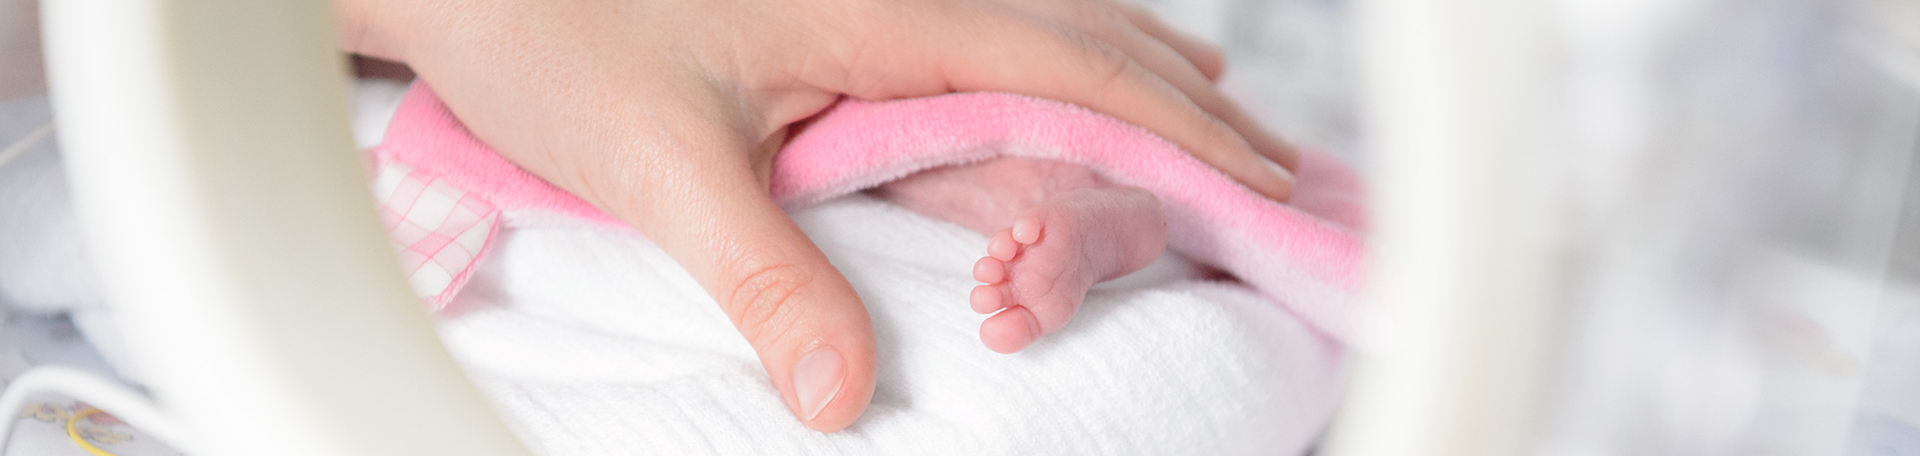 Illustrationsbild Hand mit winzigem Frühgeborenen-Fuß